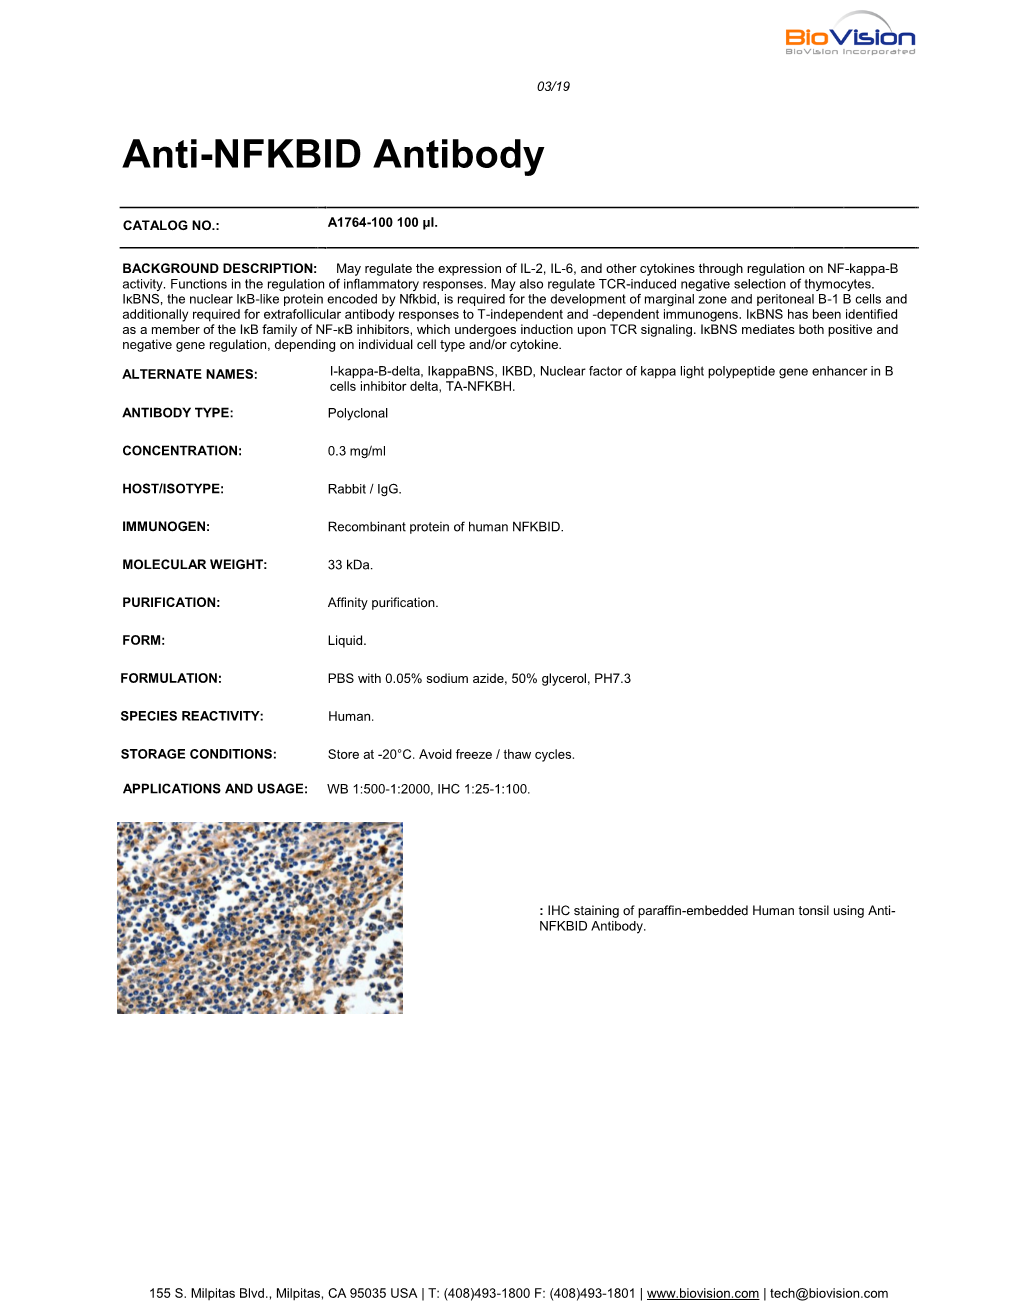 Anti-NFKBID Antibody